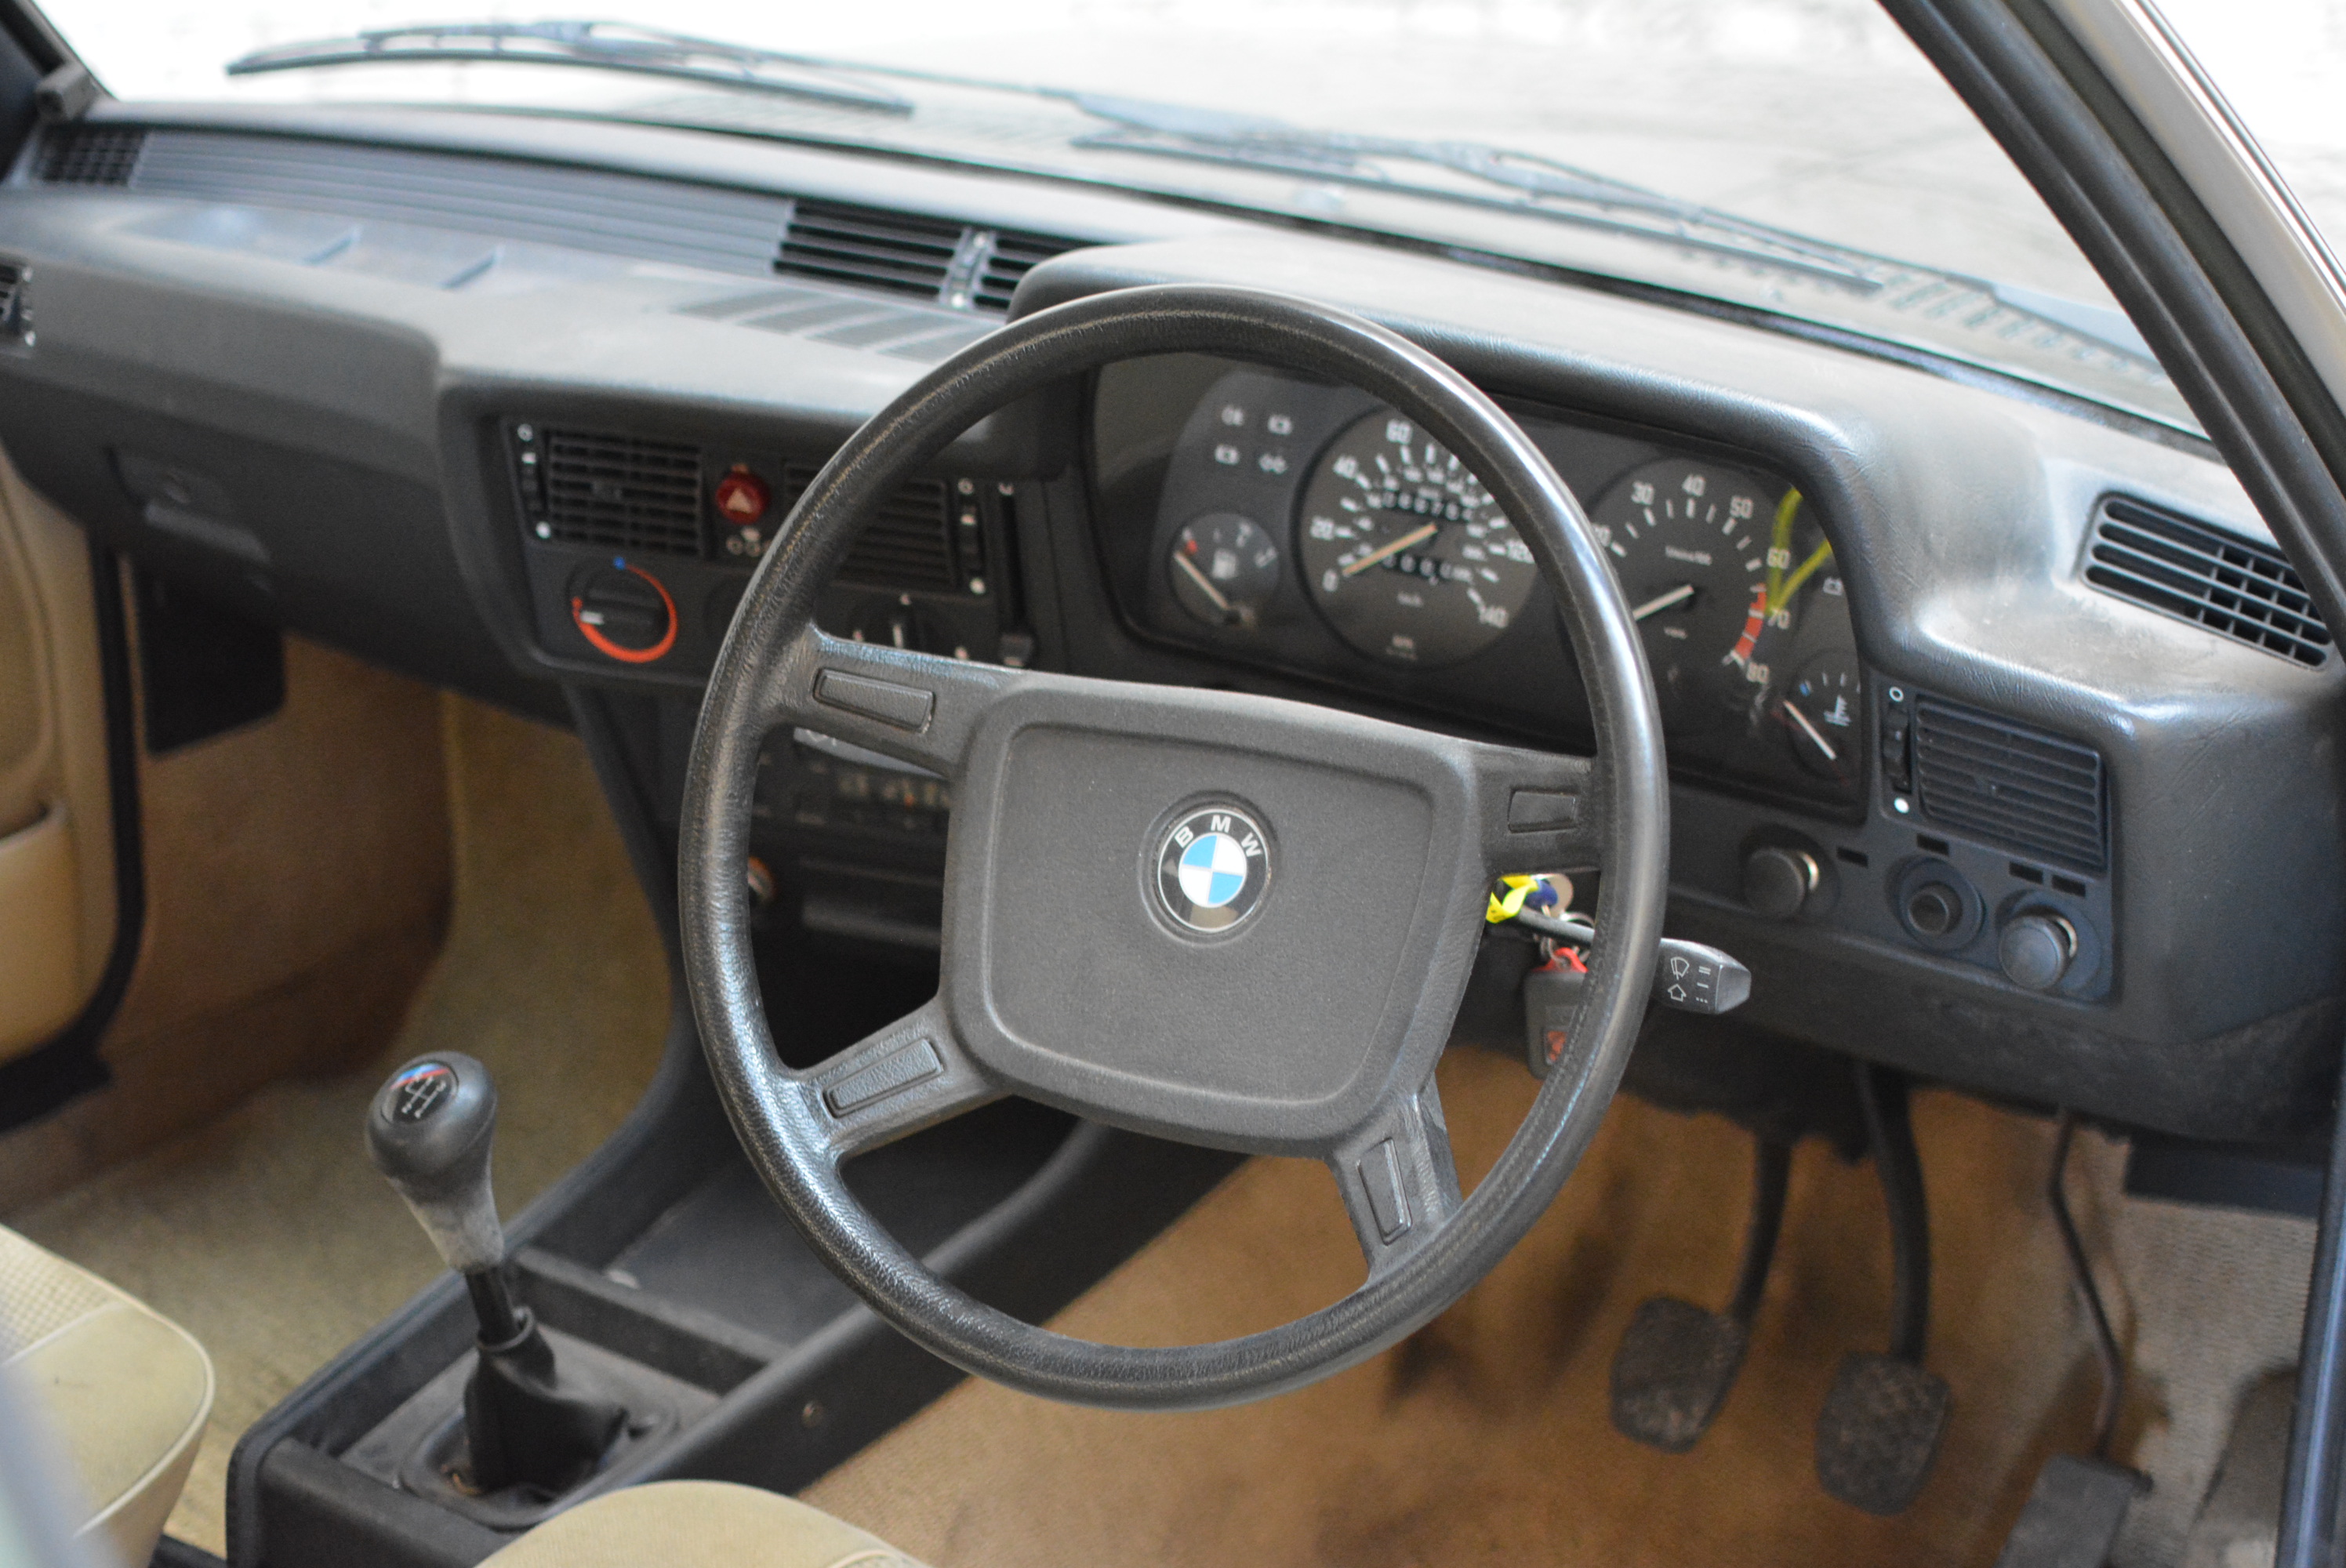 BMW 323i (E21)